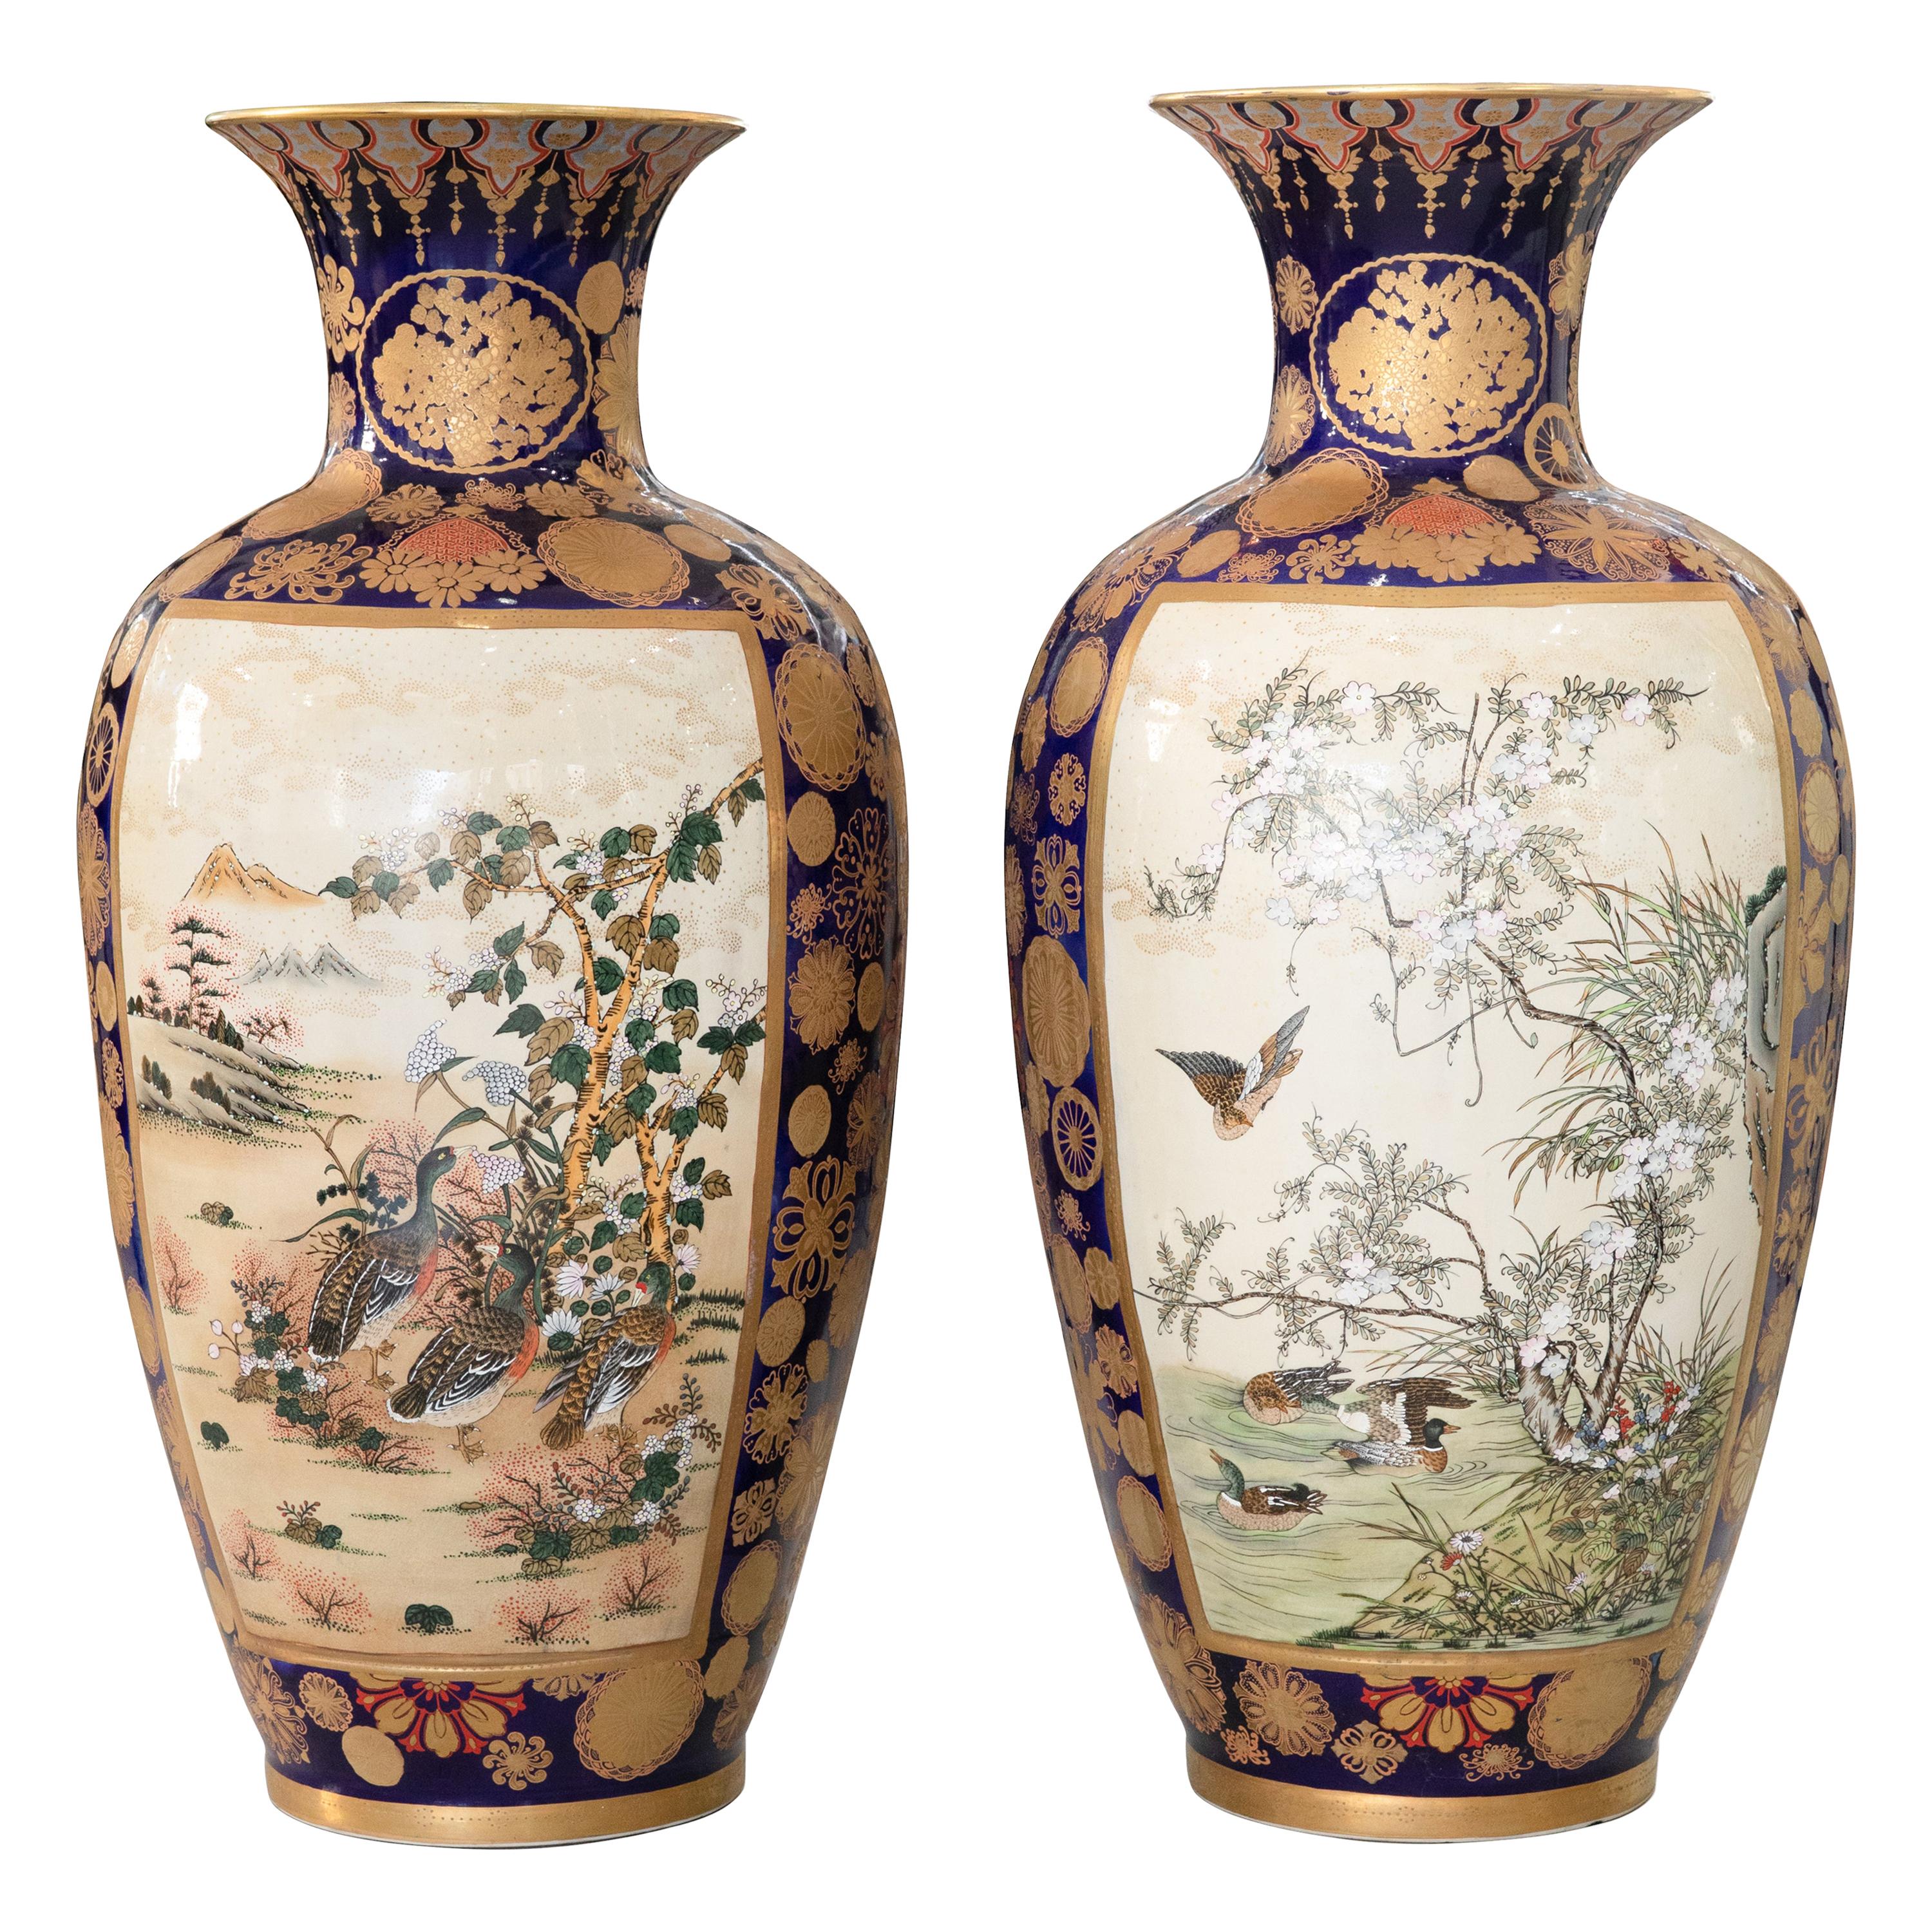 Pair of Palace Sized Vintage Japanese Kutani/Satsuma Vases, circa 1920s